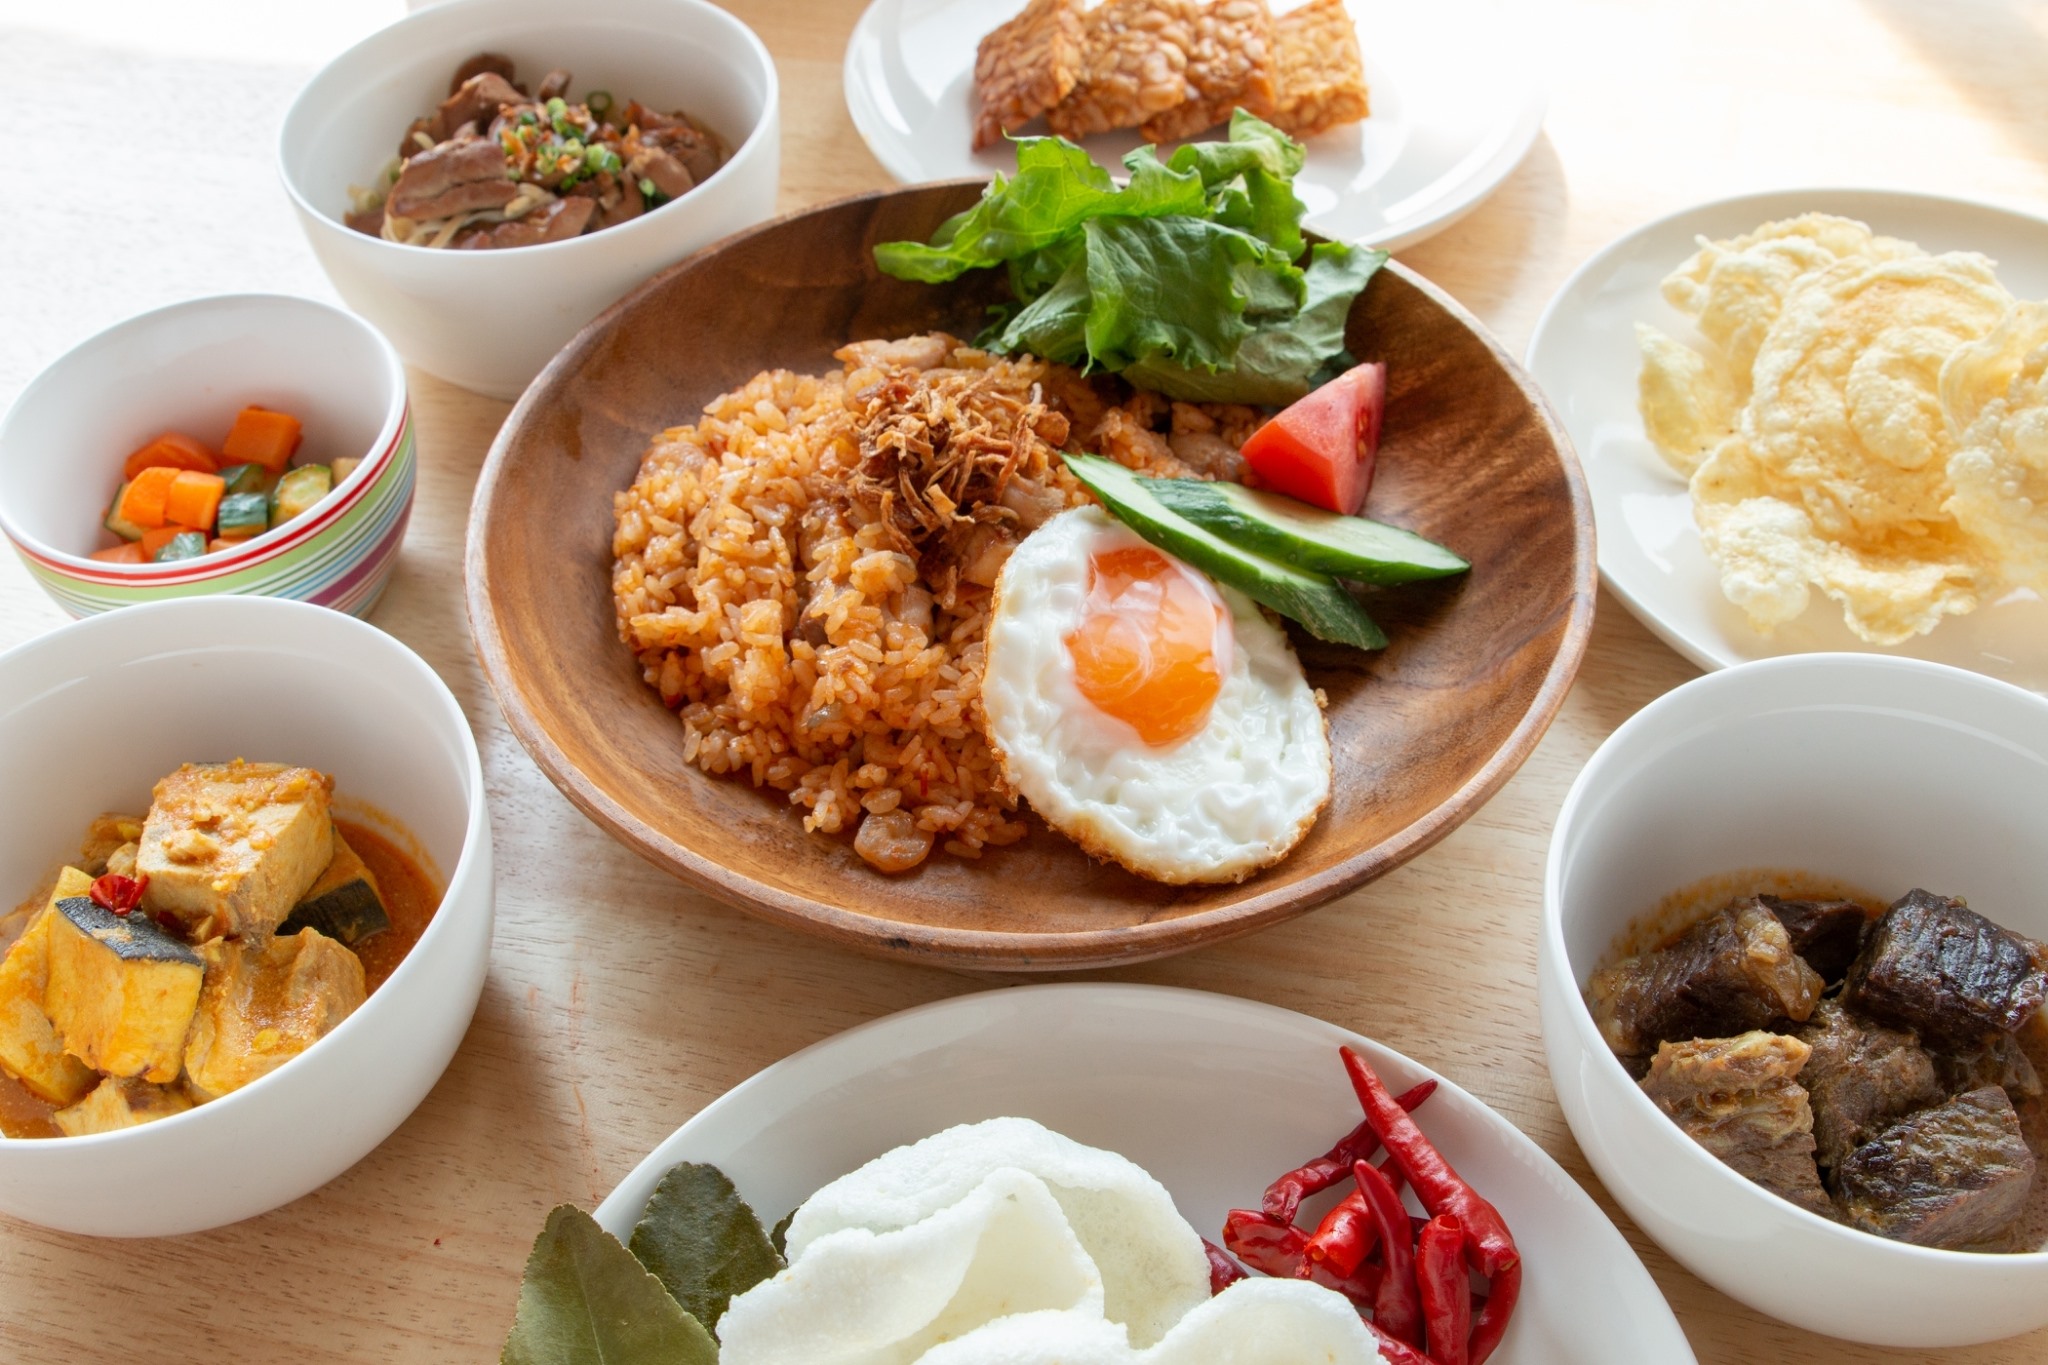 料理 インドネシア サウンスンダヒロコのメニューページです。インドネシア、西ジャワ料理をお楽しみください。